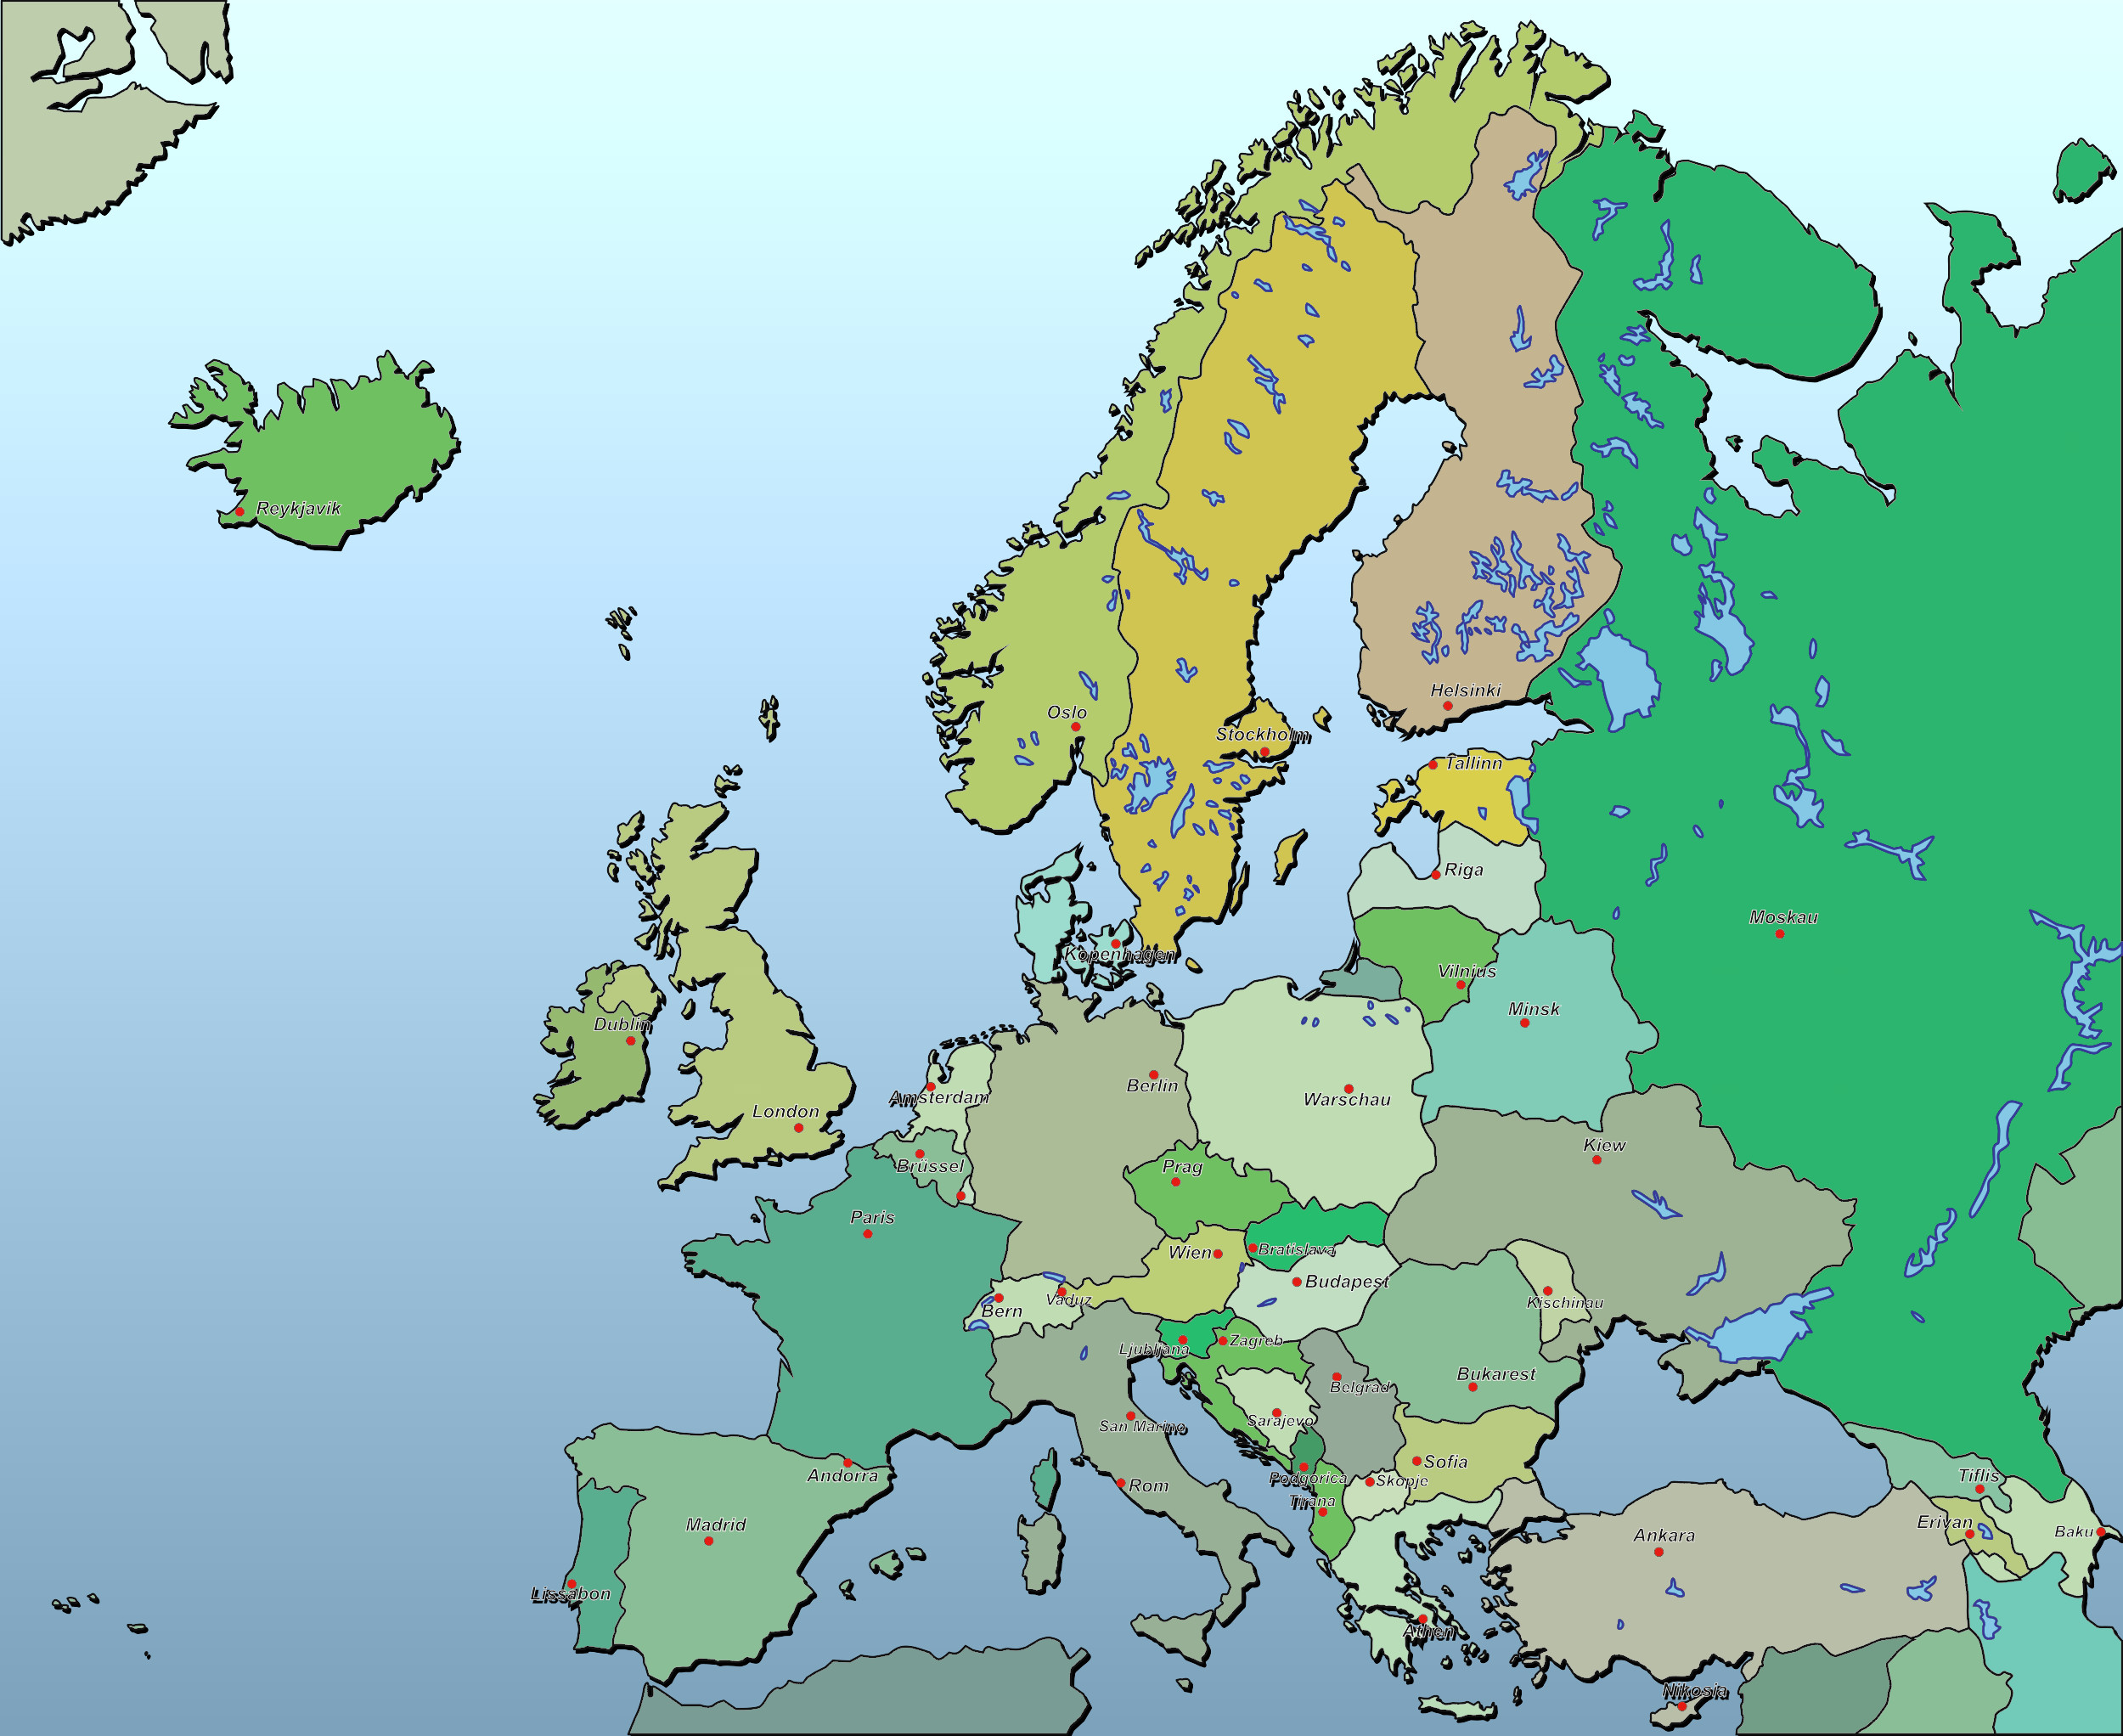 Heim Handwerk Karten Kostenlos
 Kostenlose Landkarten aller Länder der Welt